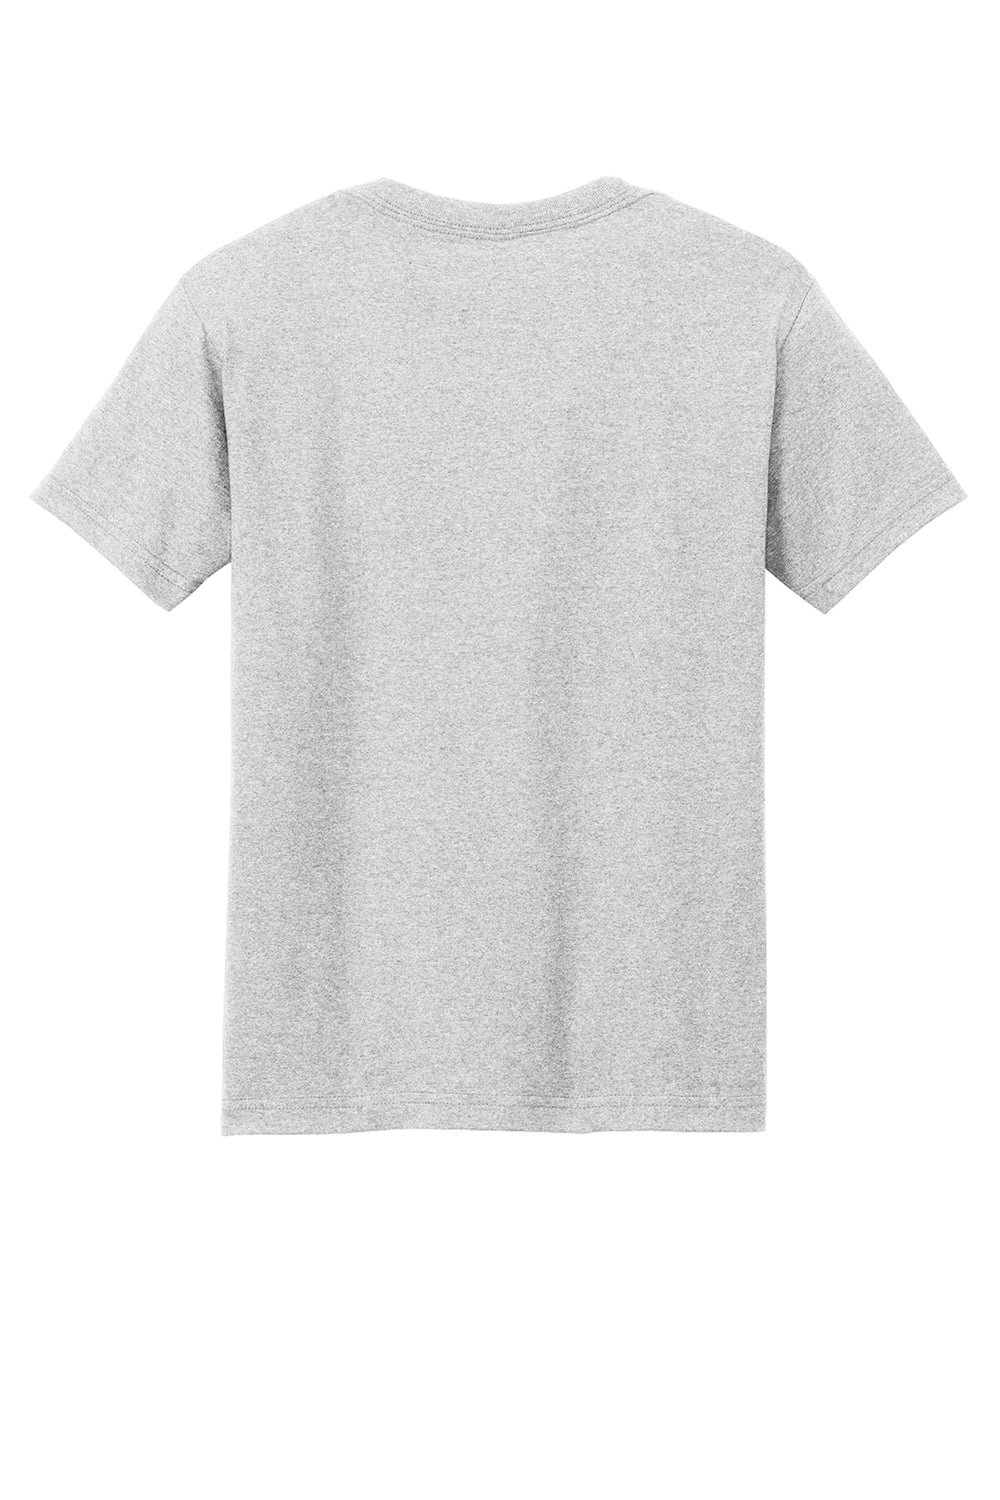 American Apparel 1301/AL1301 Mens Short Sleeve Crewneck T-Shirt Ash Grey Flat Back